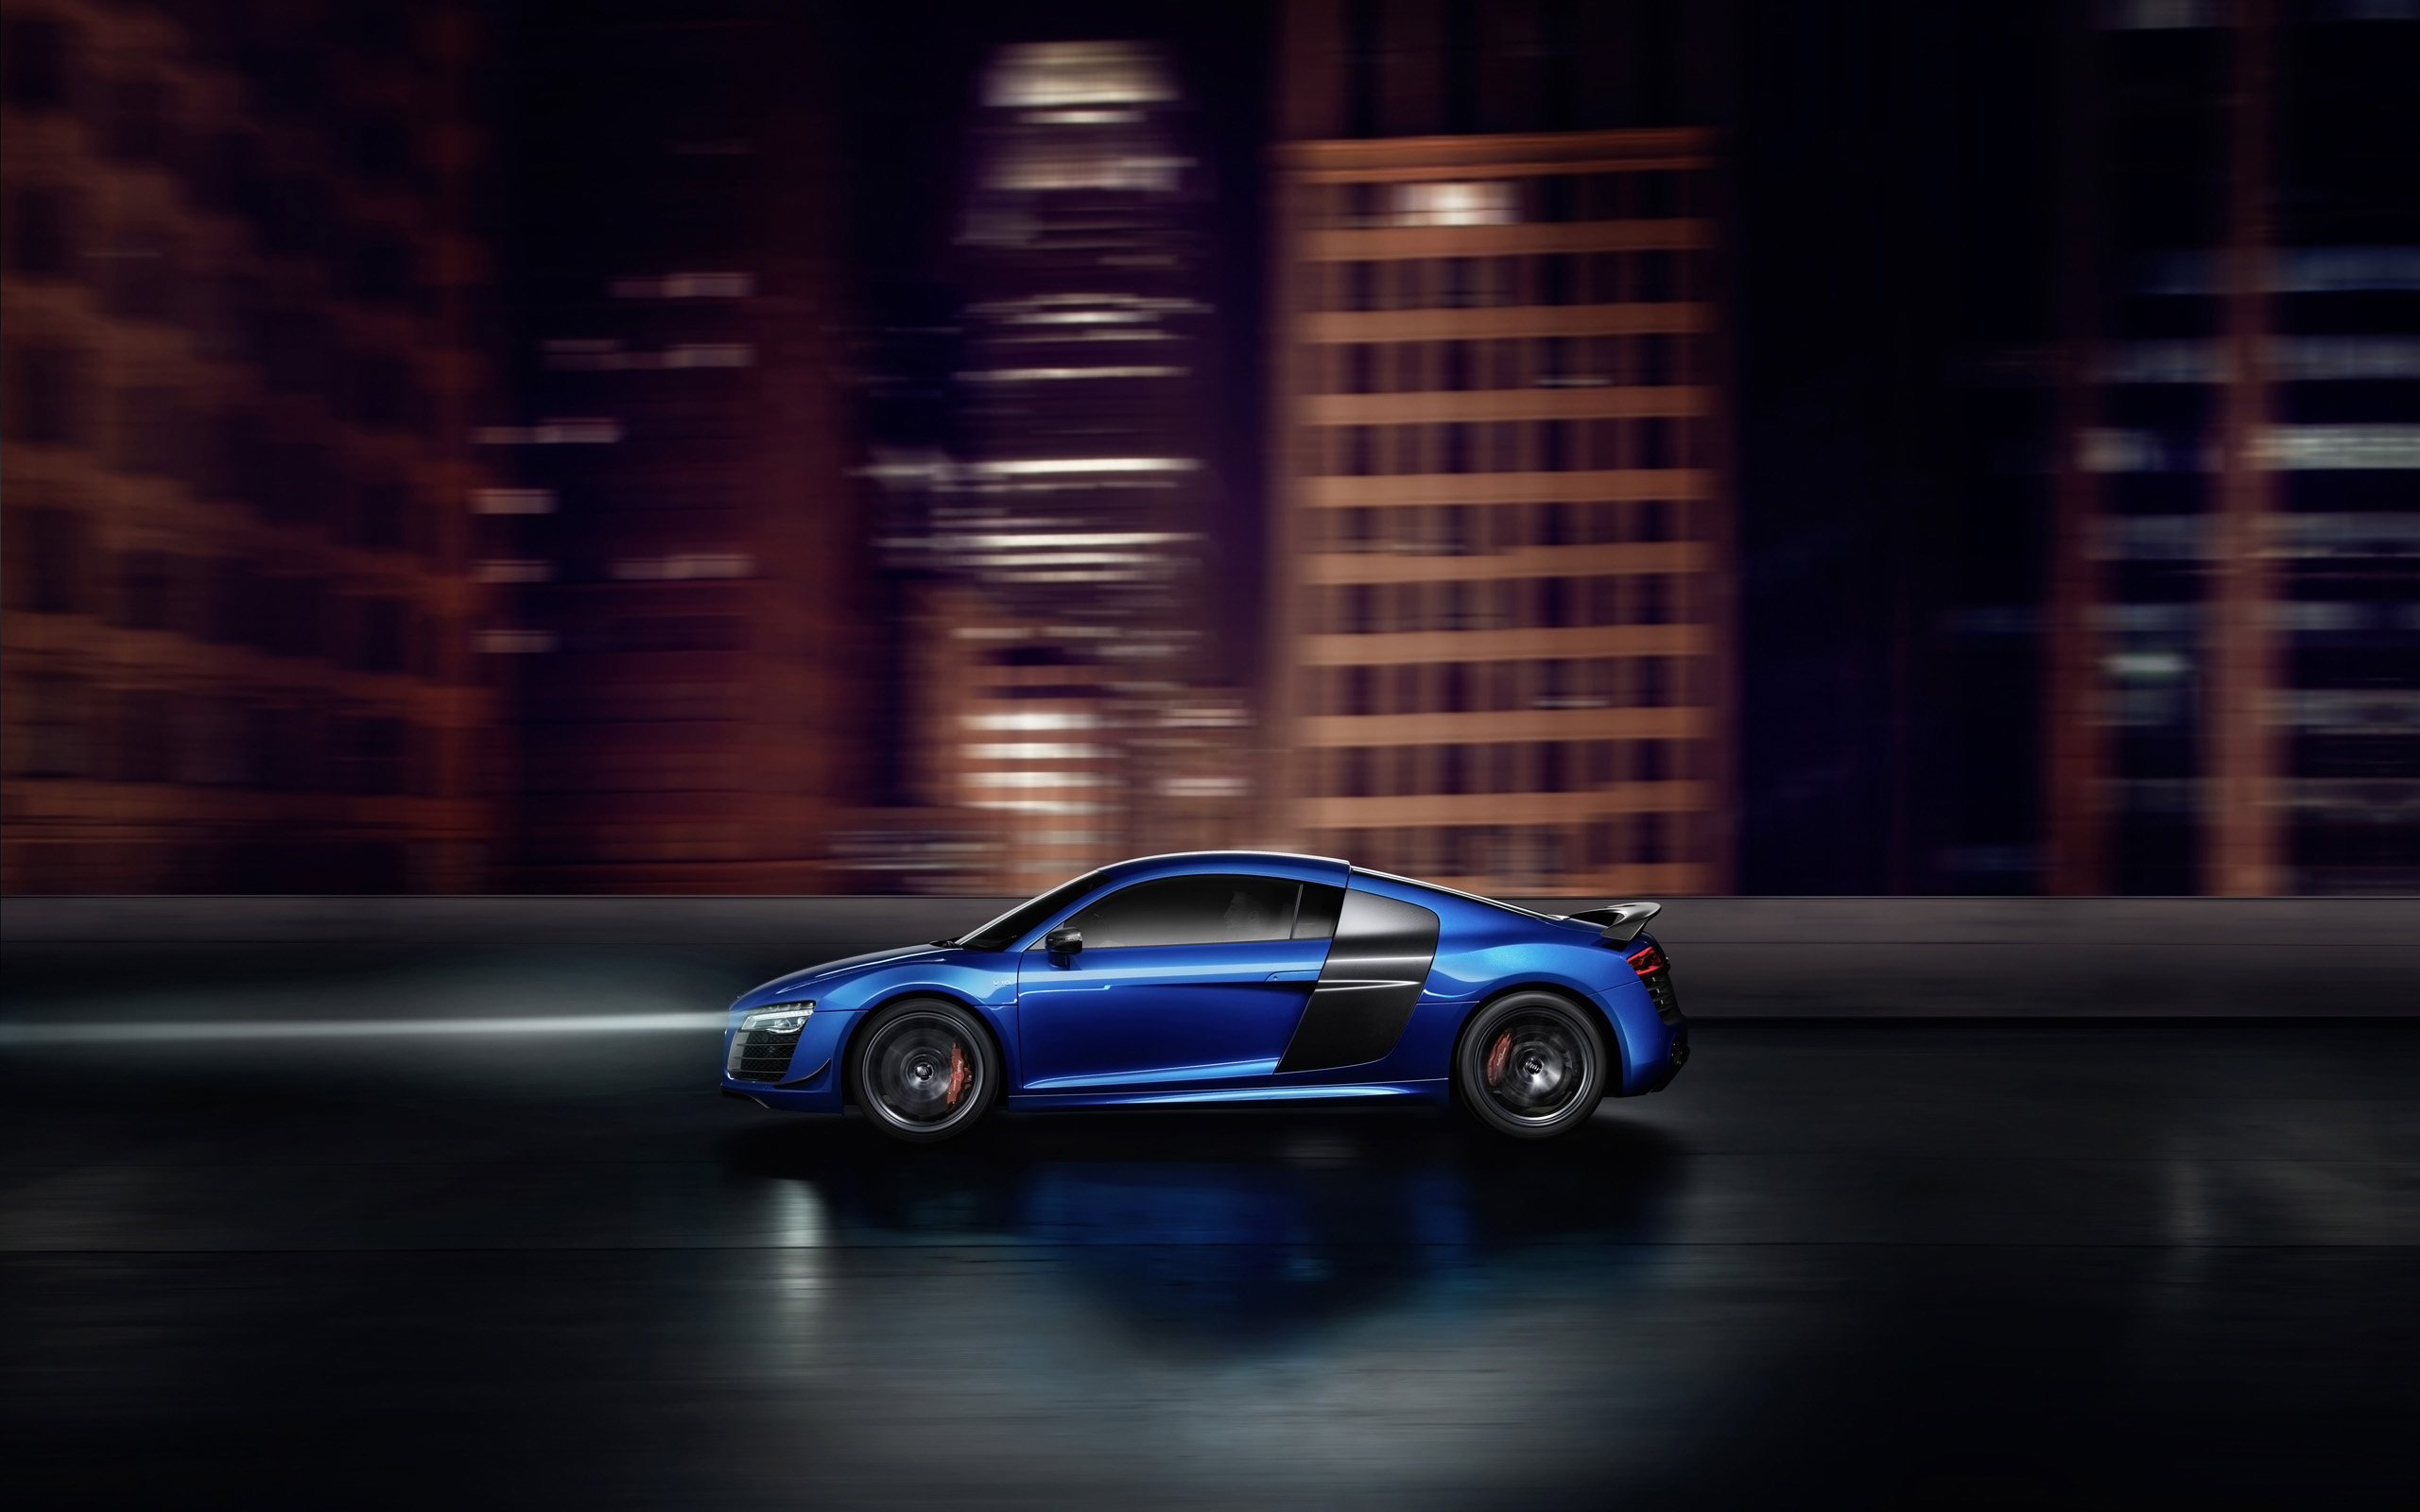  2015 Audi R8 LMX Wallpaper.